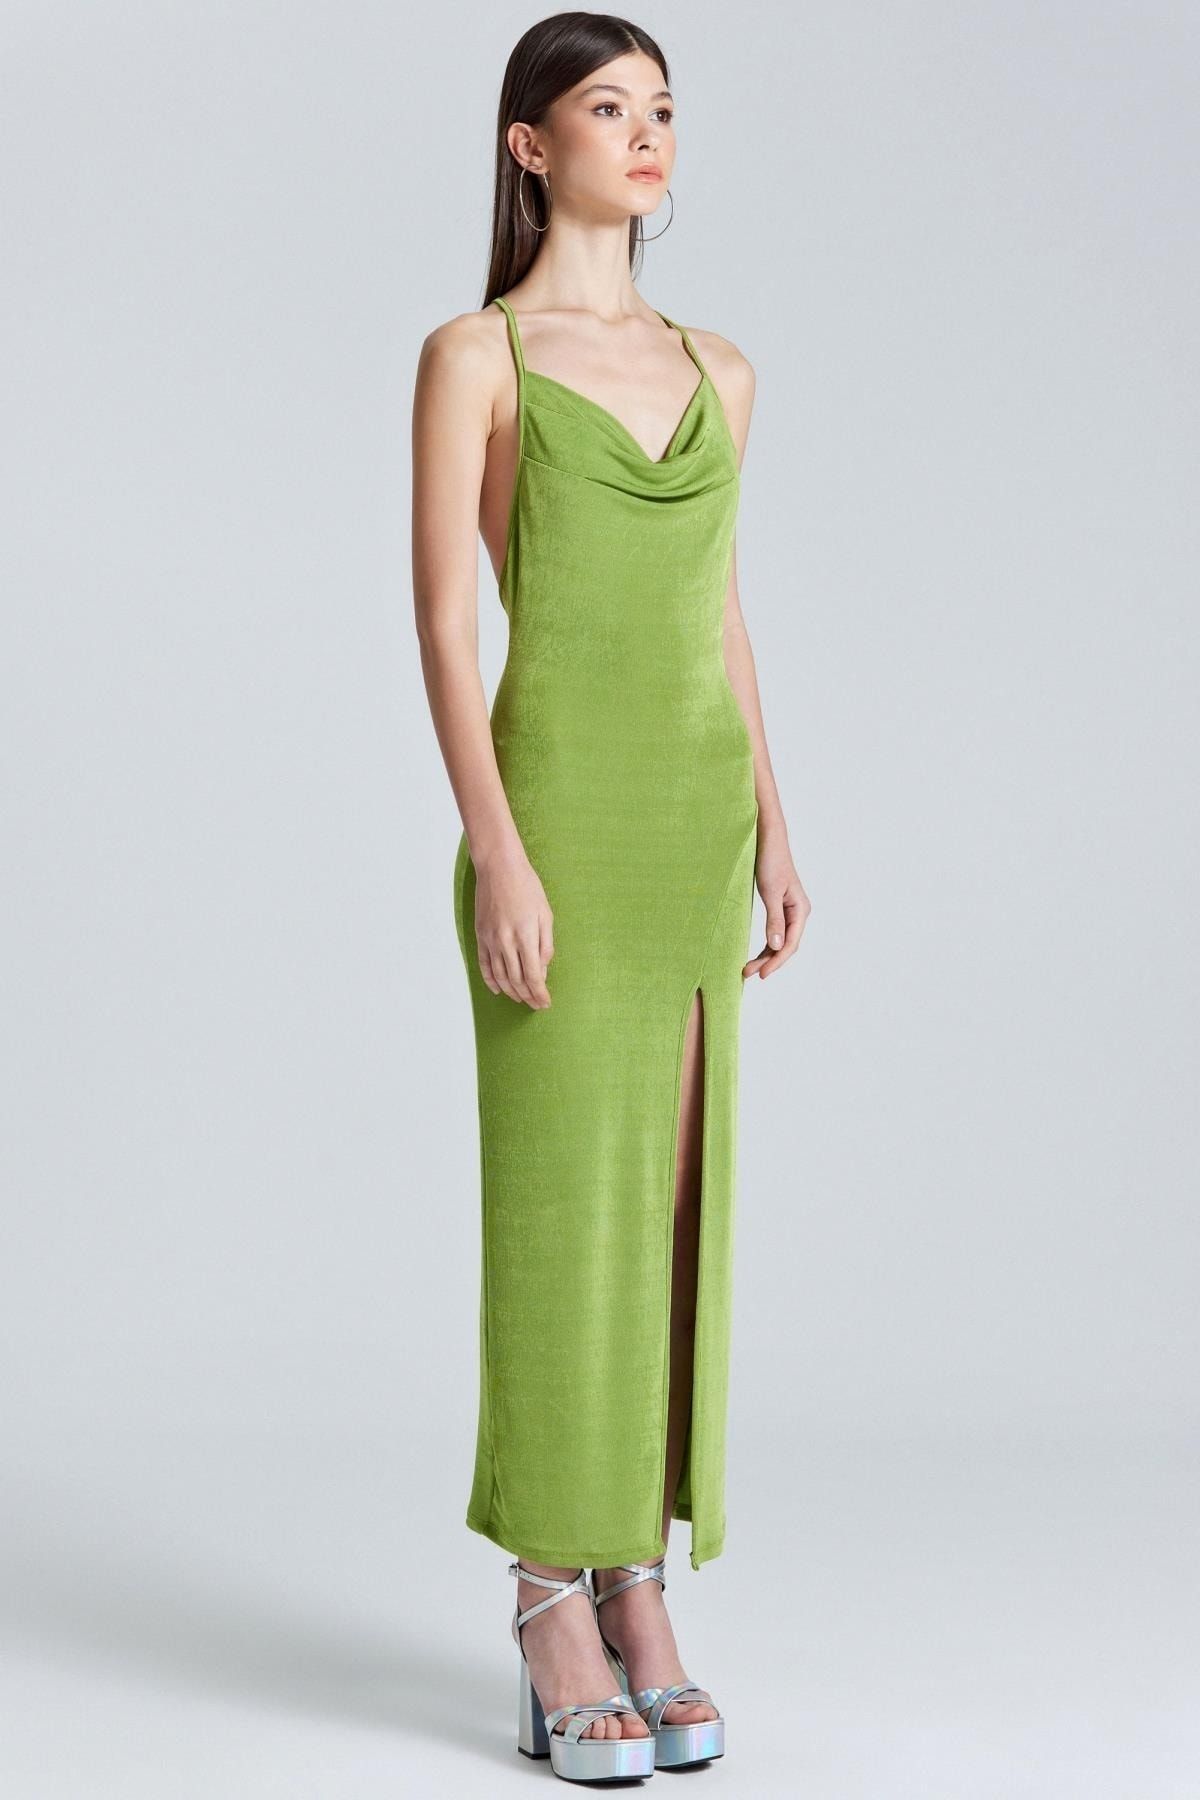 Boutiquen 1961 Uzun Yırtmaç Detaylı Yeşil Elbise